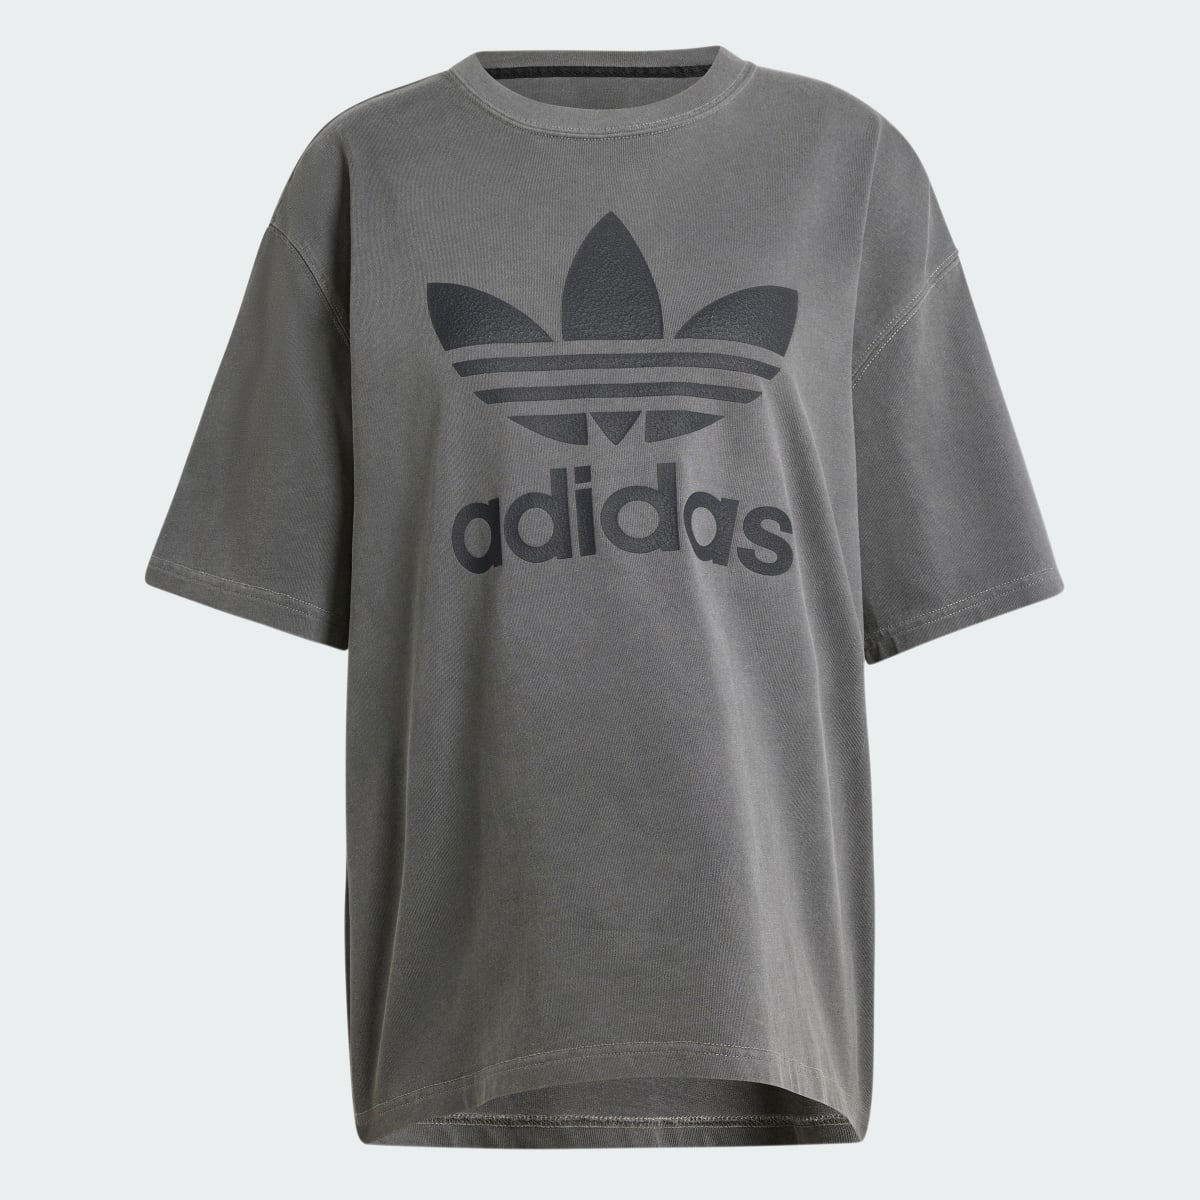 Adidas T-shirt Trèfle délavé. 5